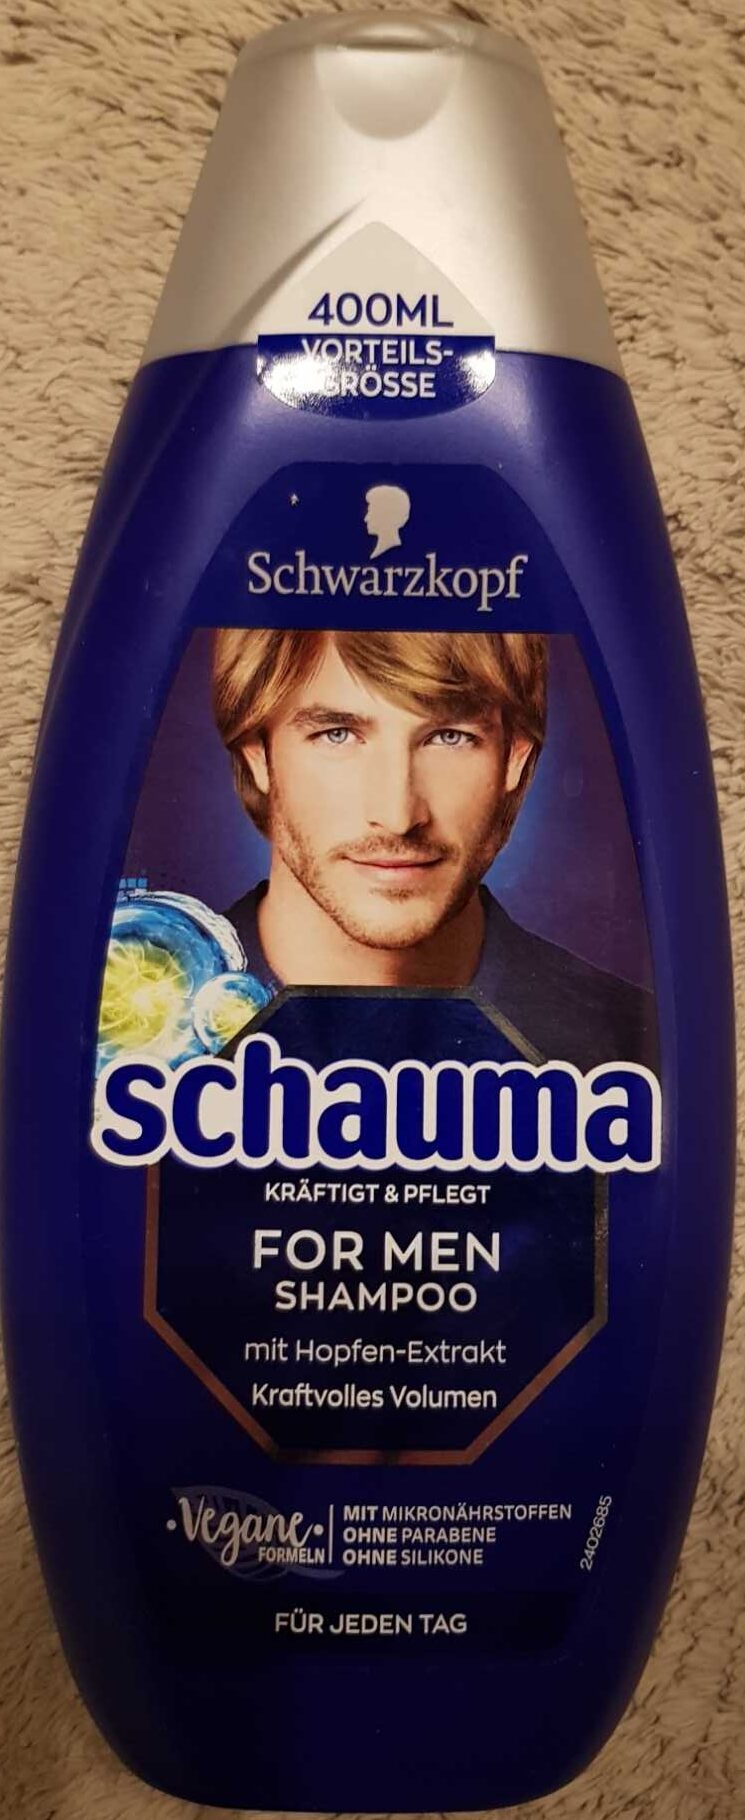 Schauma for men shampoo - Product - de